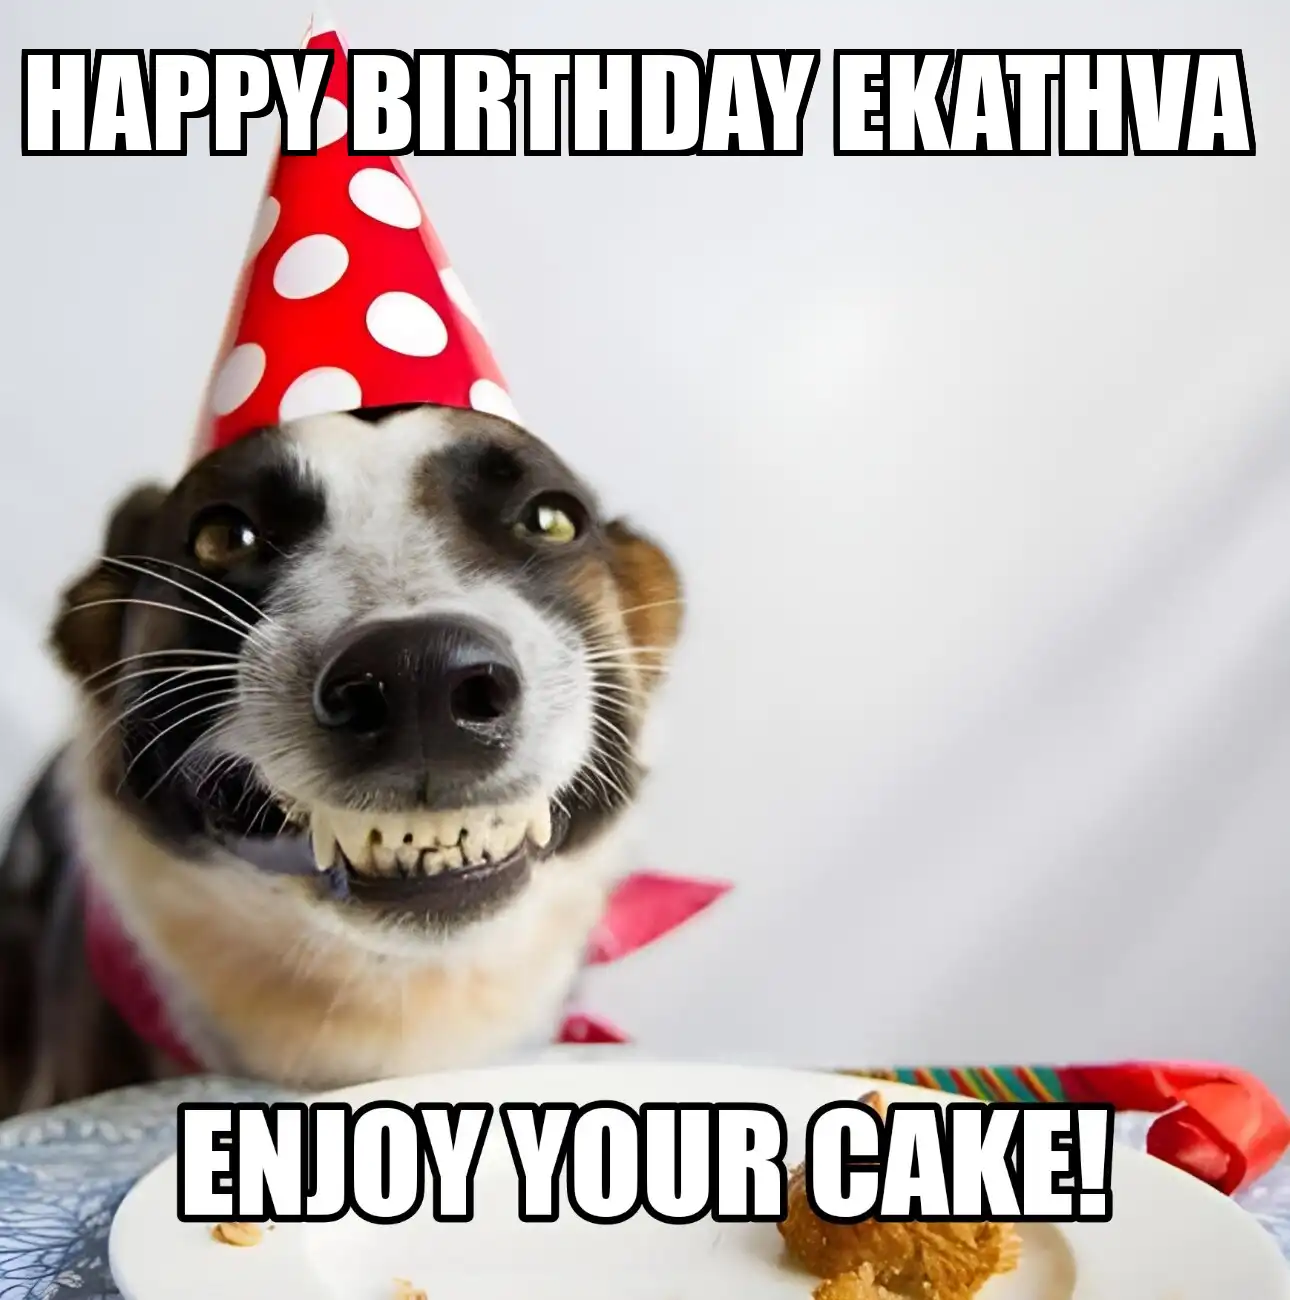 Happy Birthday Ekathva Enjoy Your Cake Dog Meme